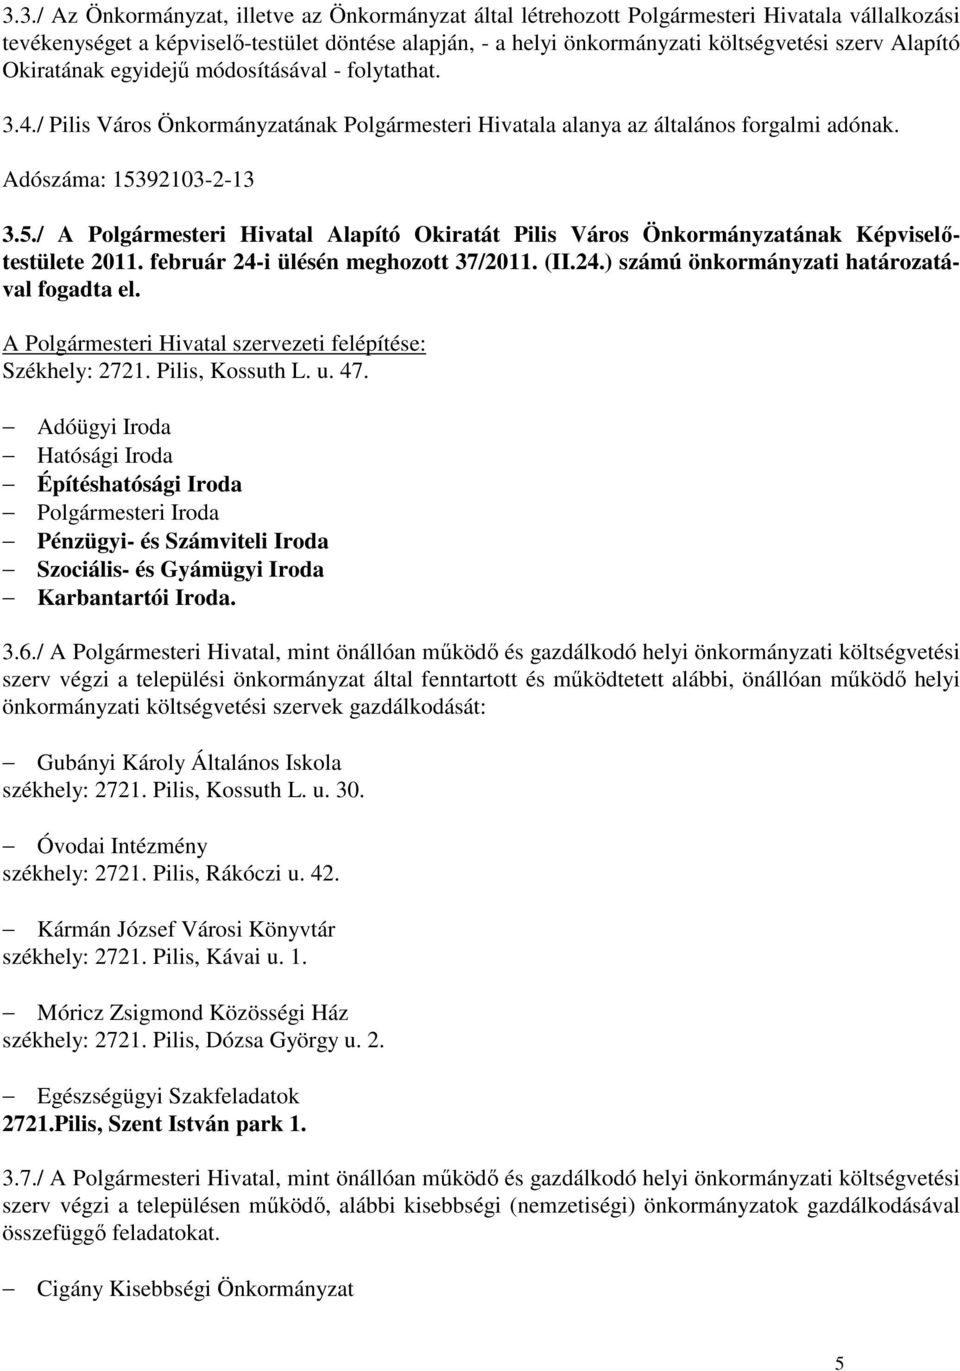 92103-2-13 3.5./ A Polgármesteri Hivatal Alapító Okiratát Pilis Város Önkormányzatának Képviselıtestülete 2011. február 24-i ülésén meghozott 37/2011. (II.24.) számú önkormányzati határozatával fogadta el.